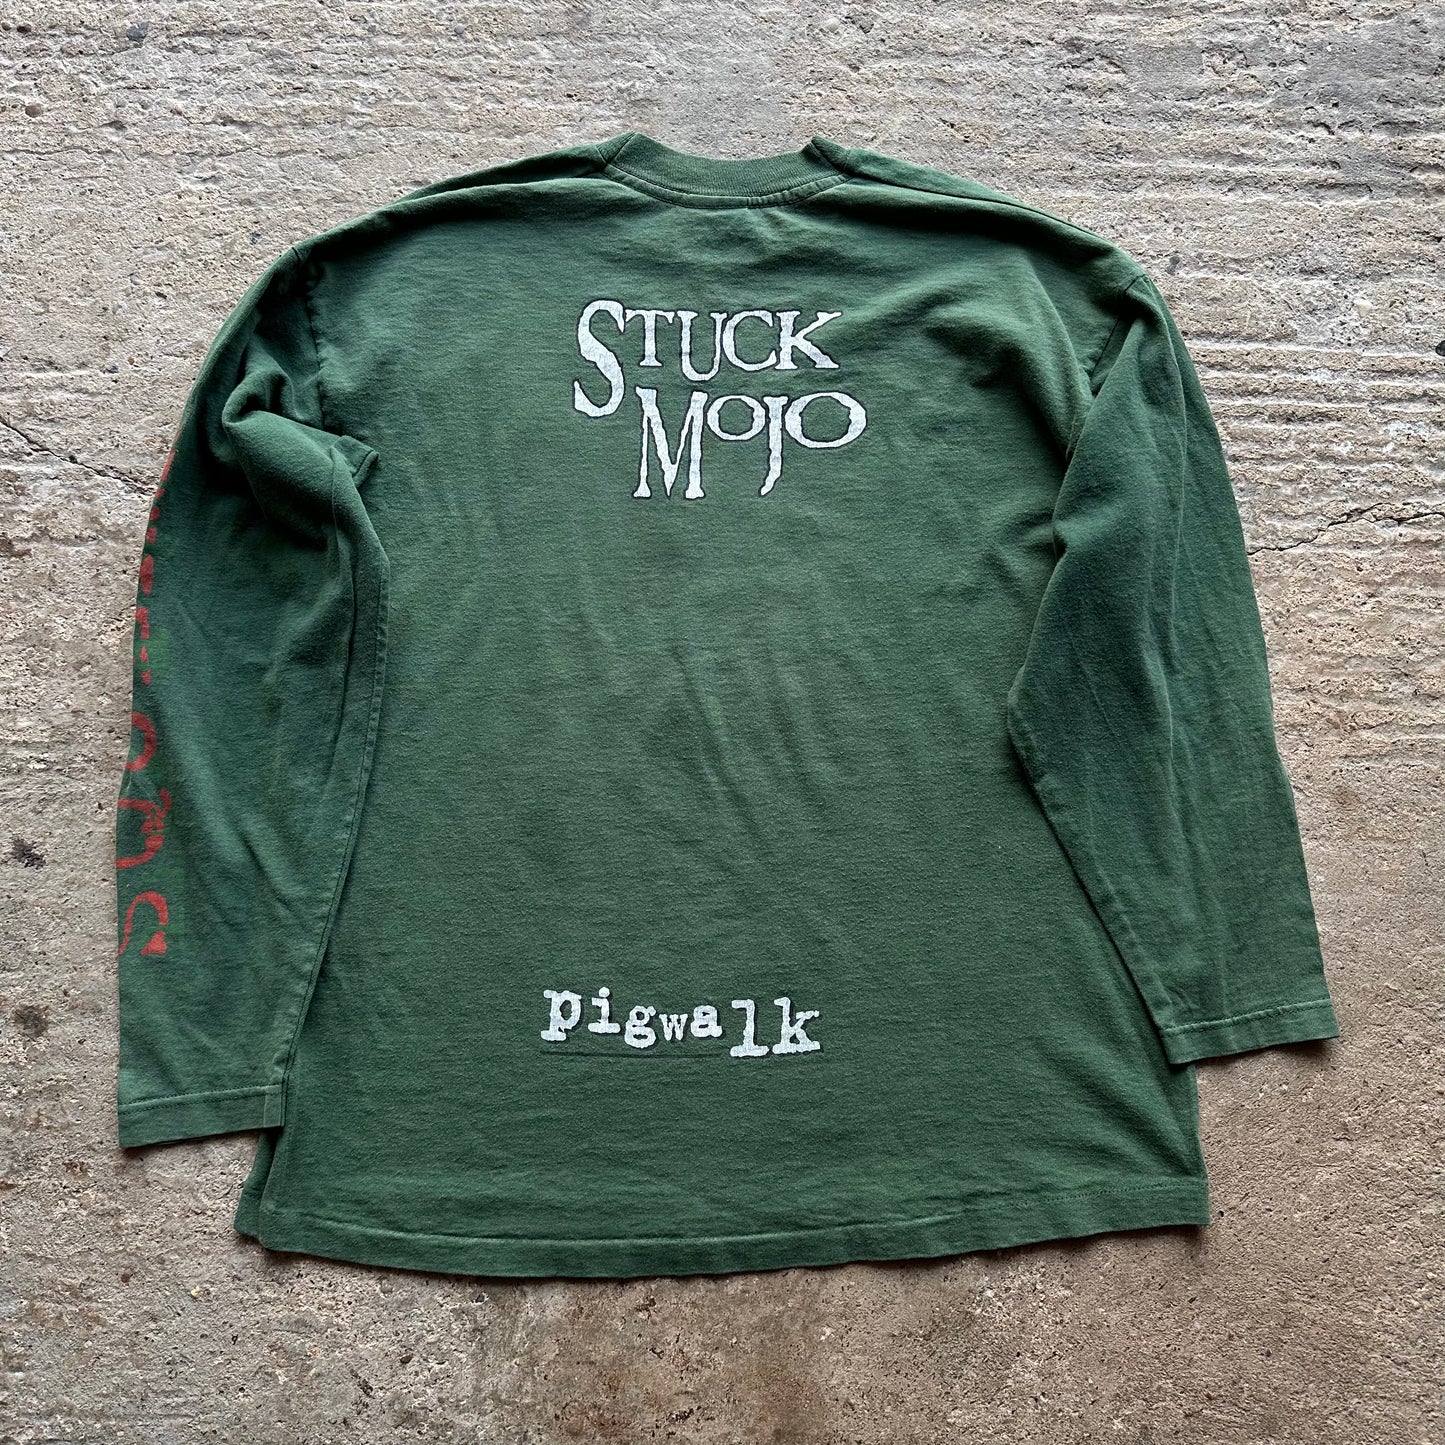 Stuck Mojo - 'Pigwalk' - 1996- XL